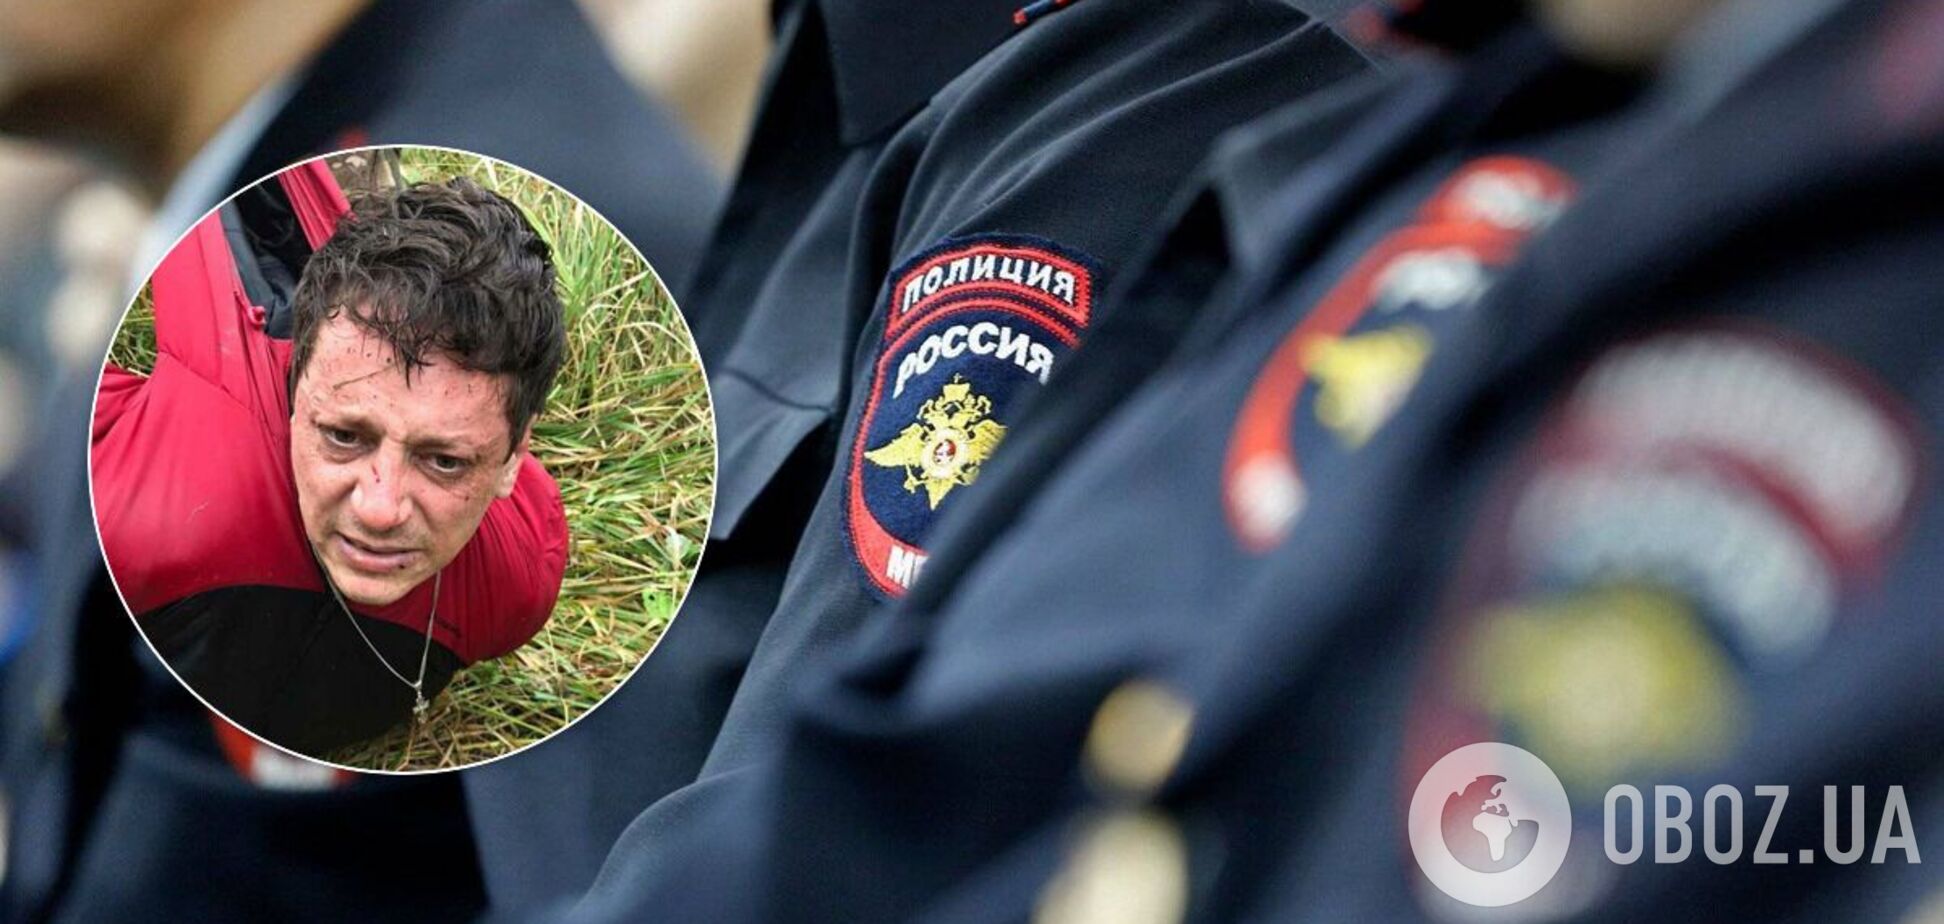 В России поймали маньяка, убившего двух детей и насиловавшего девушек: выяснились детали. 18+